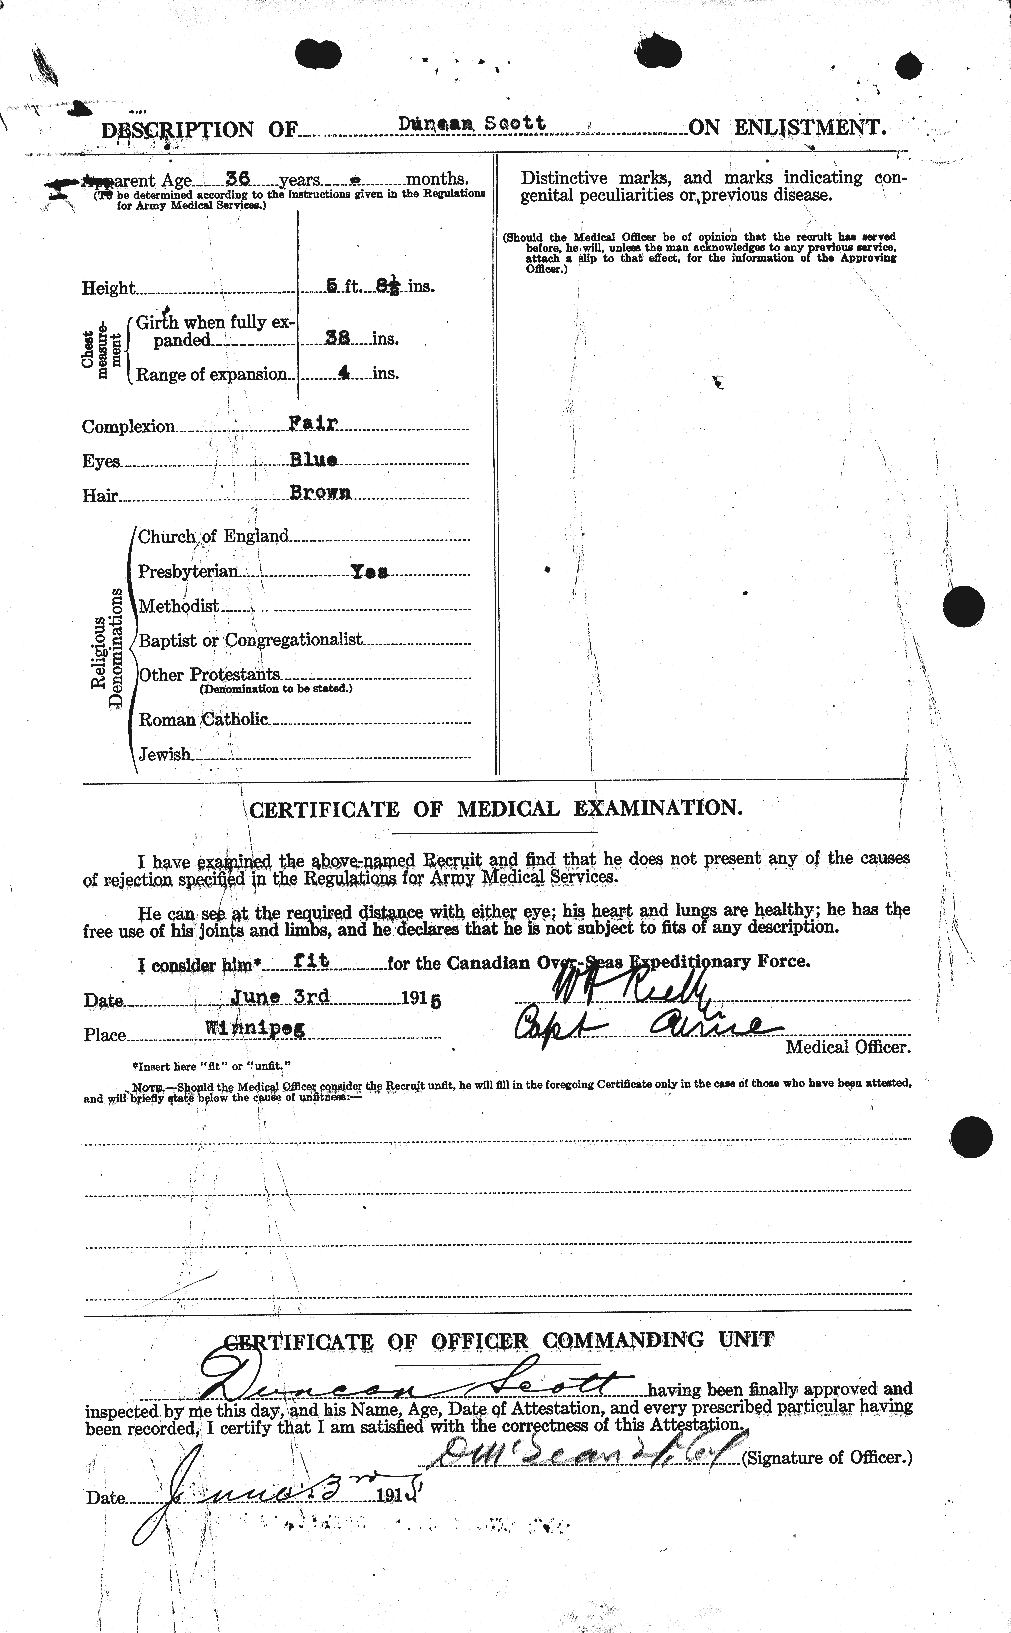 Dossiers du Personnel de la Première Guerre mondiale - CEC 085351b